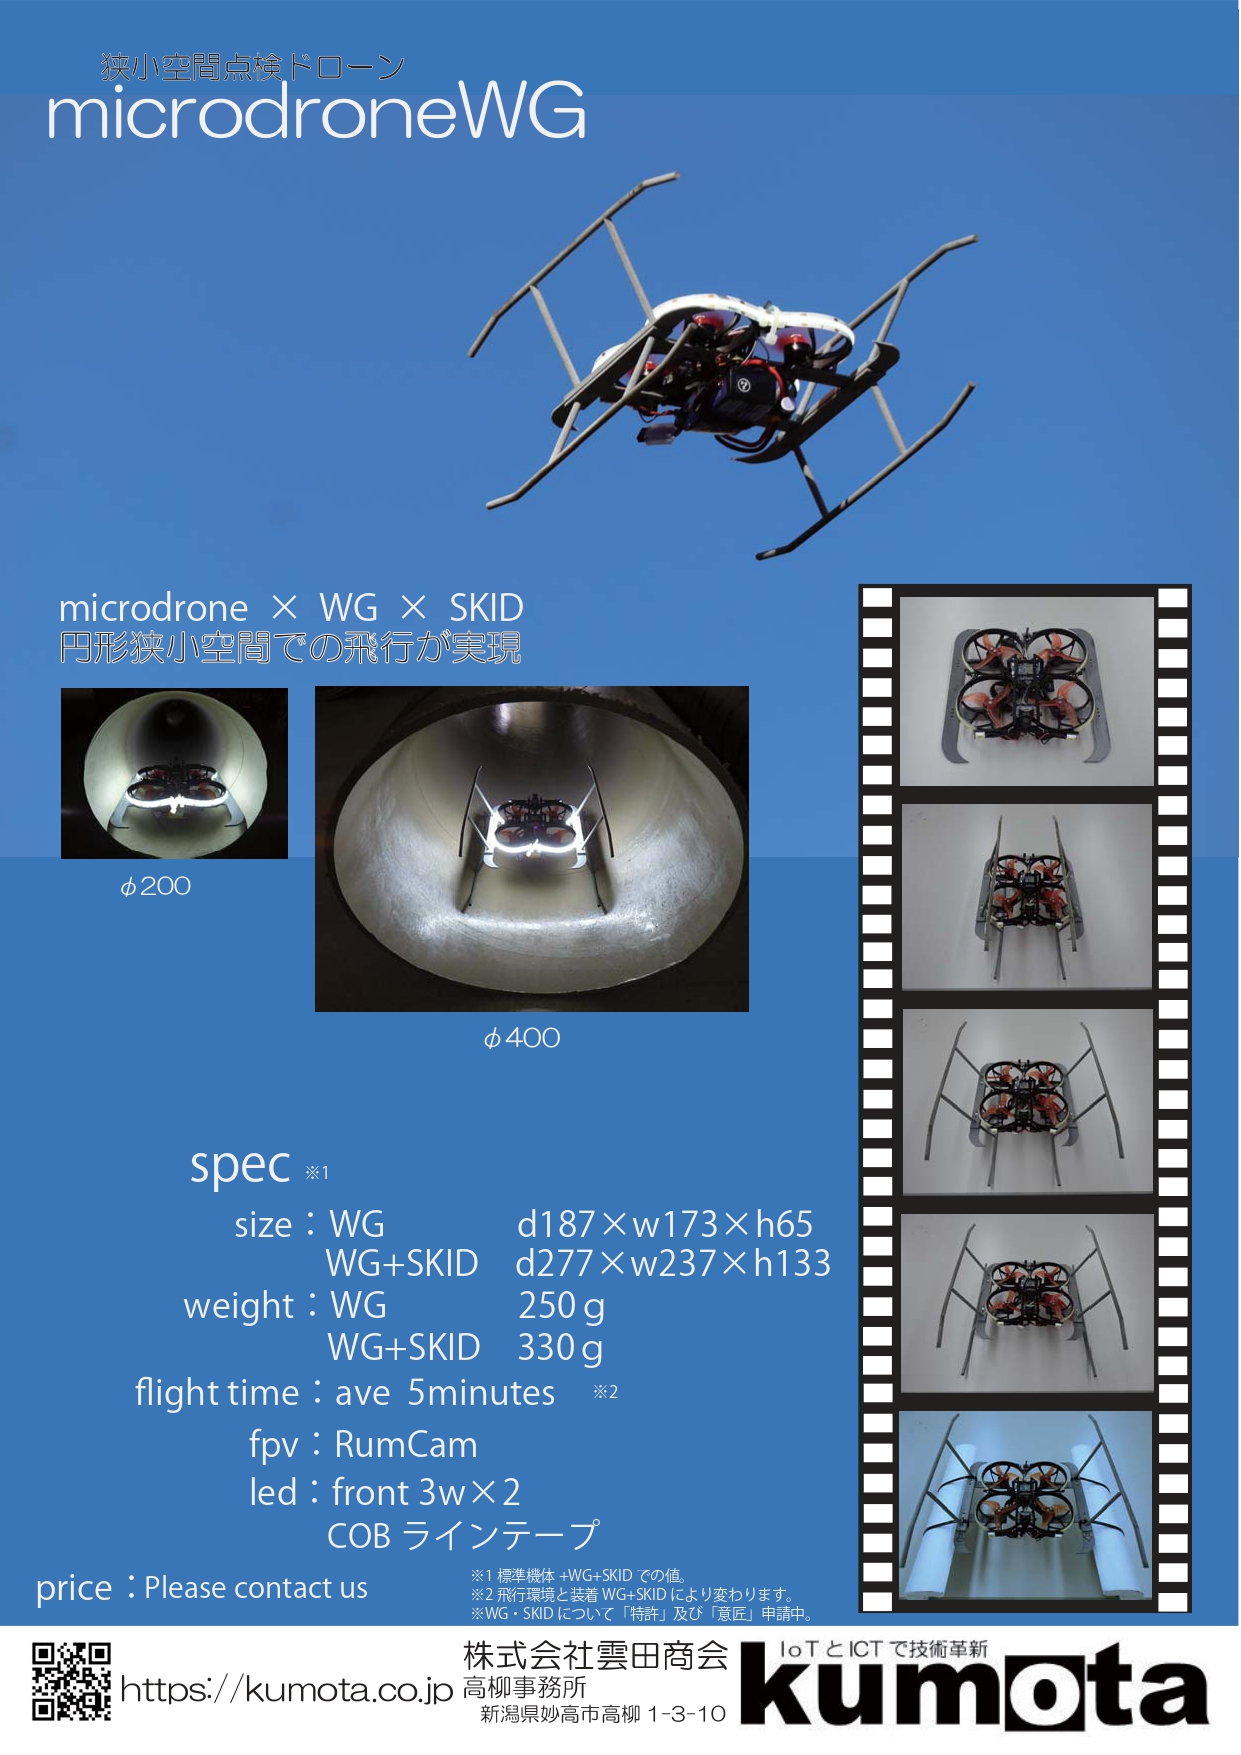 狭小空間点検ドローン「microdrone WG」